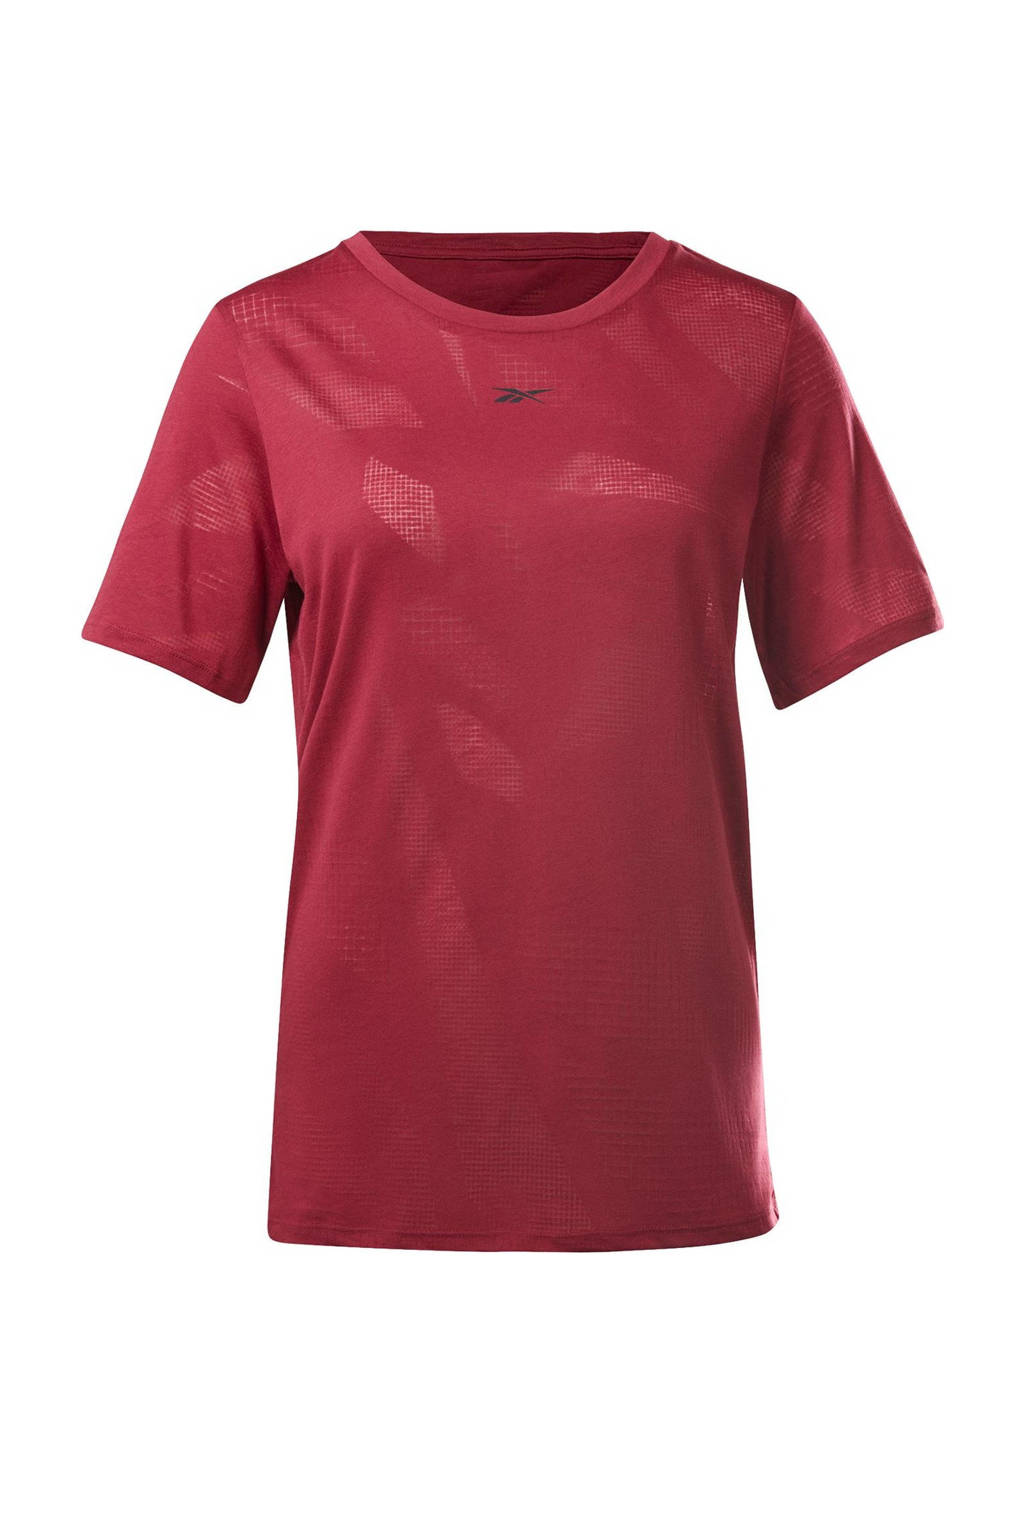 Reebok Training sport T-shirt roze, Roze